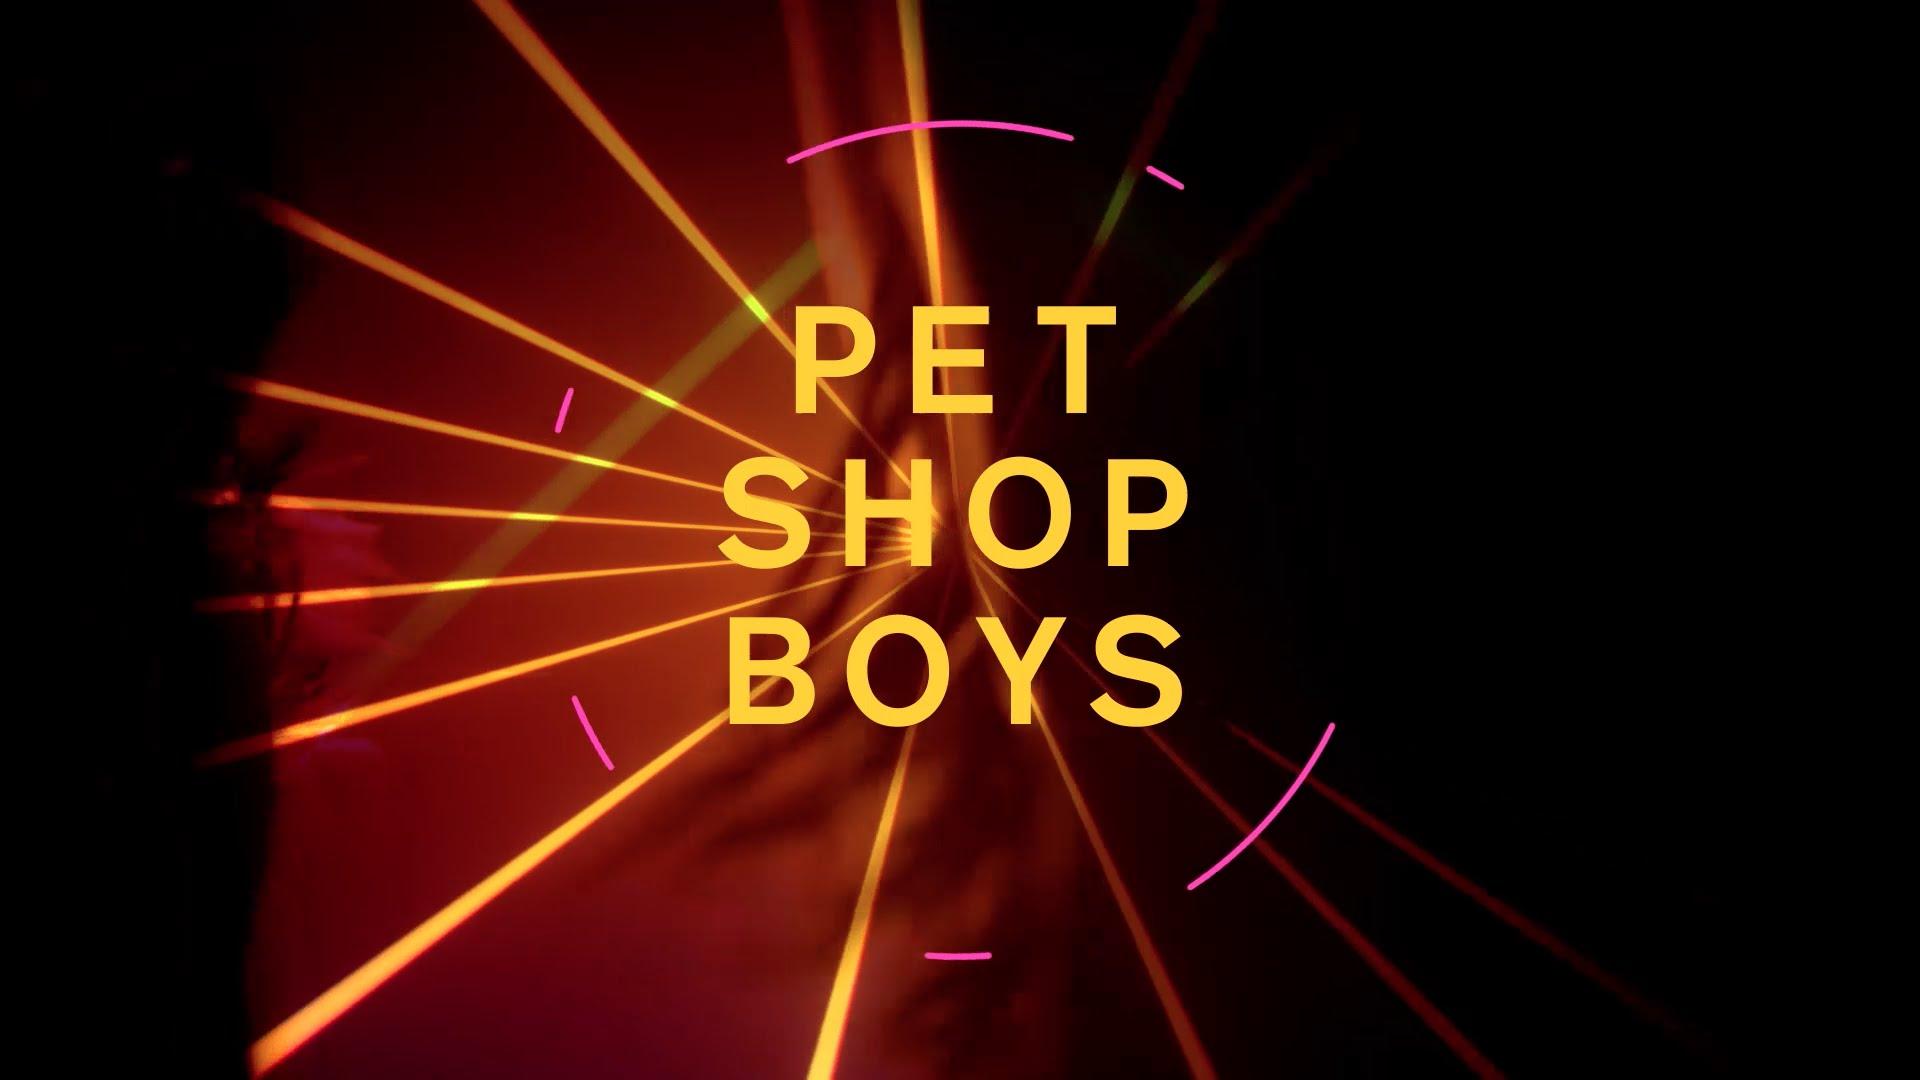 Pet shop boys shopping remix. Pet shop boys super 2016. Pet shop boys альбомы. Pet shop boys обложки альбомов. Pet shop boys альбом super.